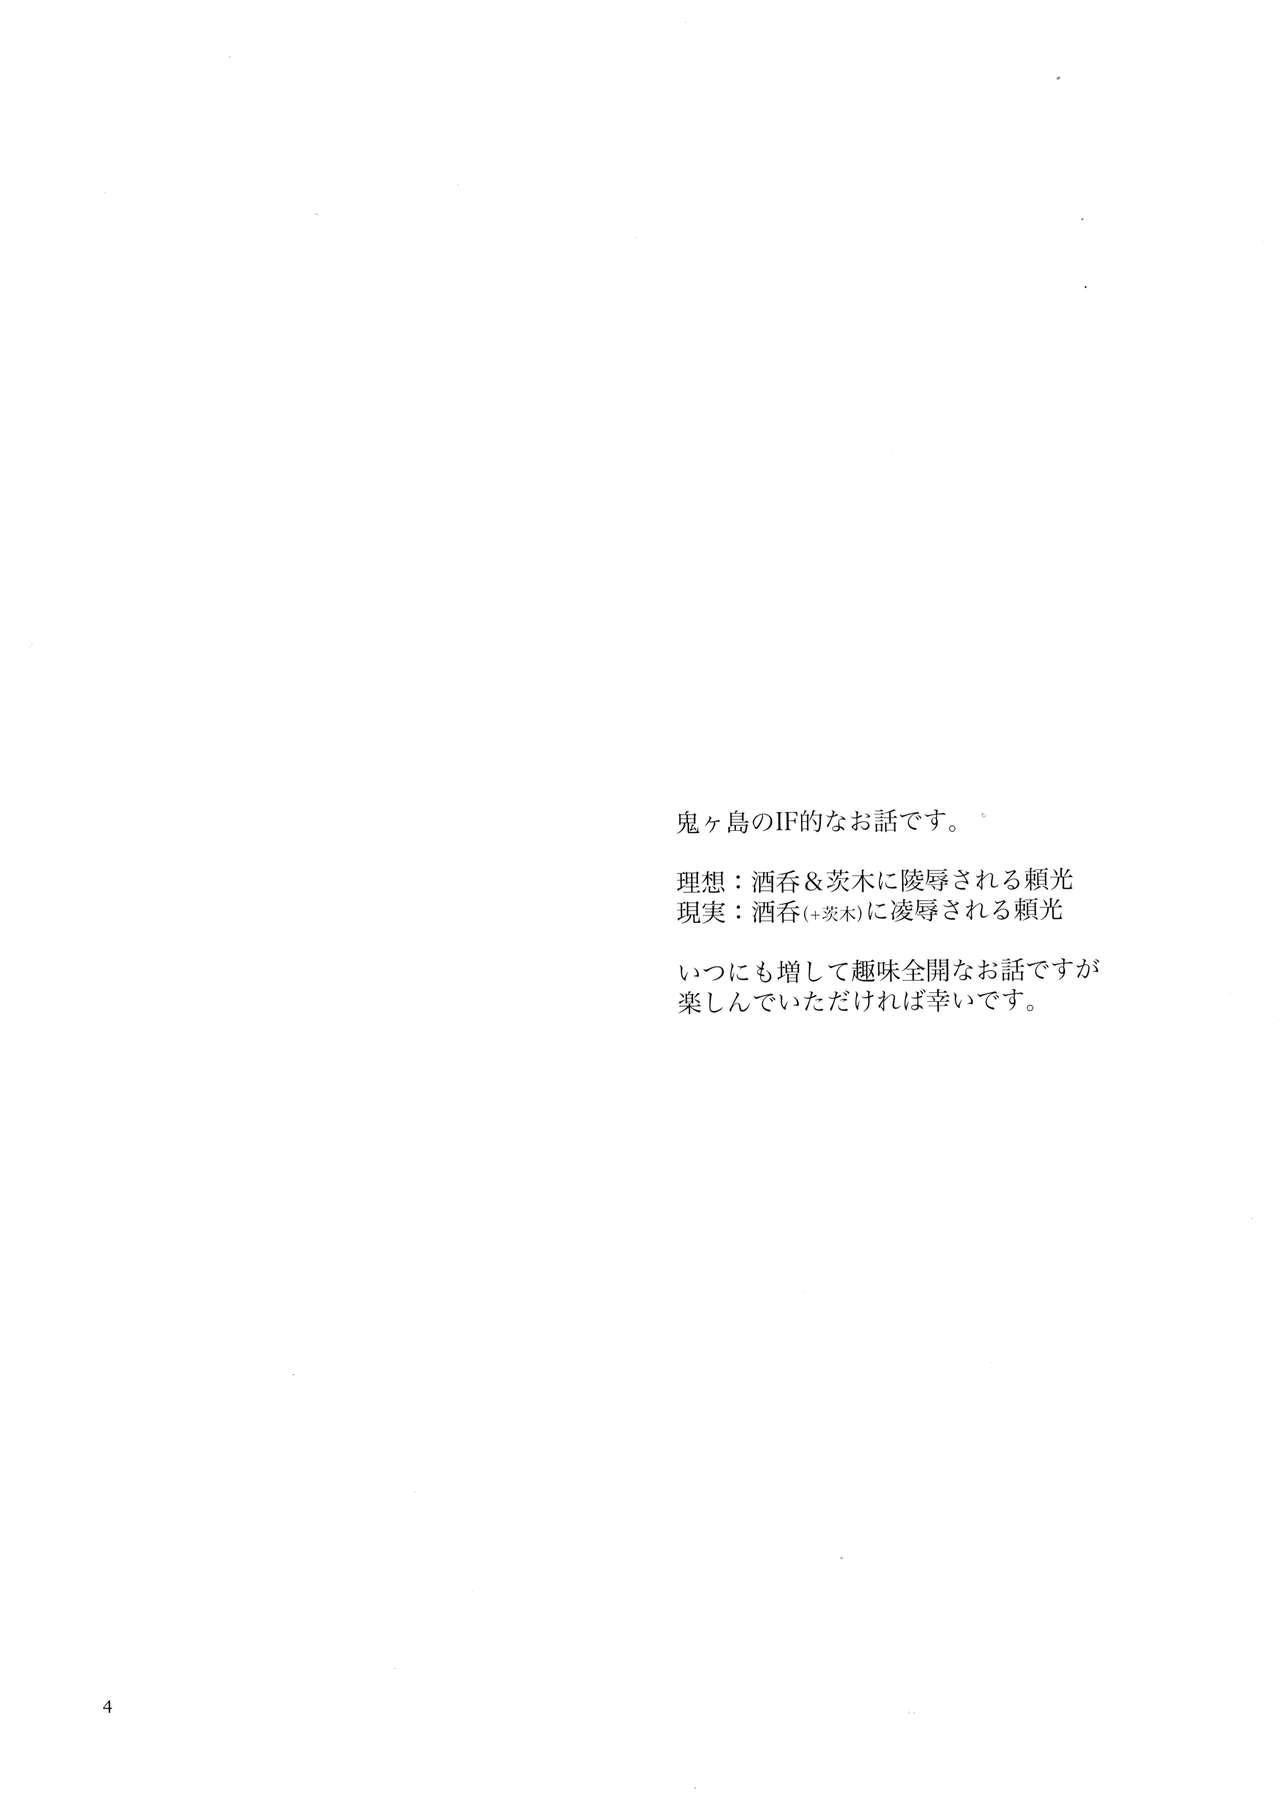 Farting Onigashima Oni Taiji - Fate grand order Mmd - Page 3